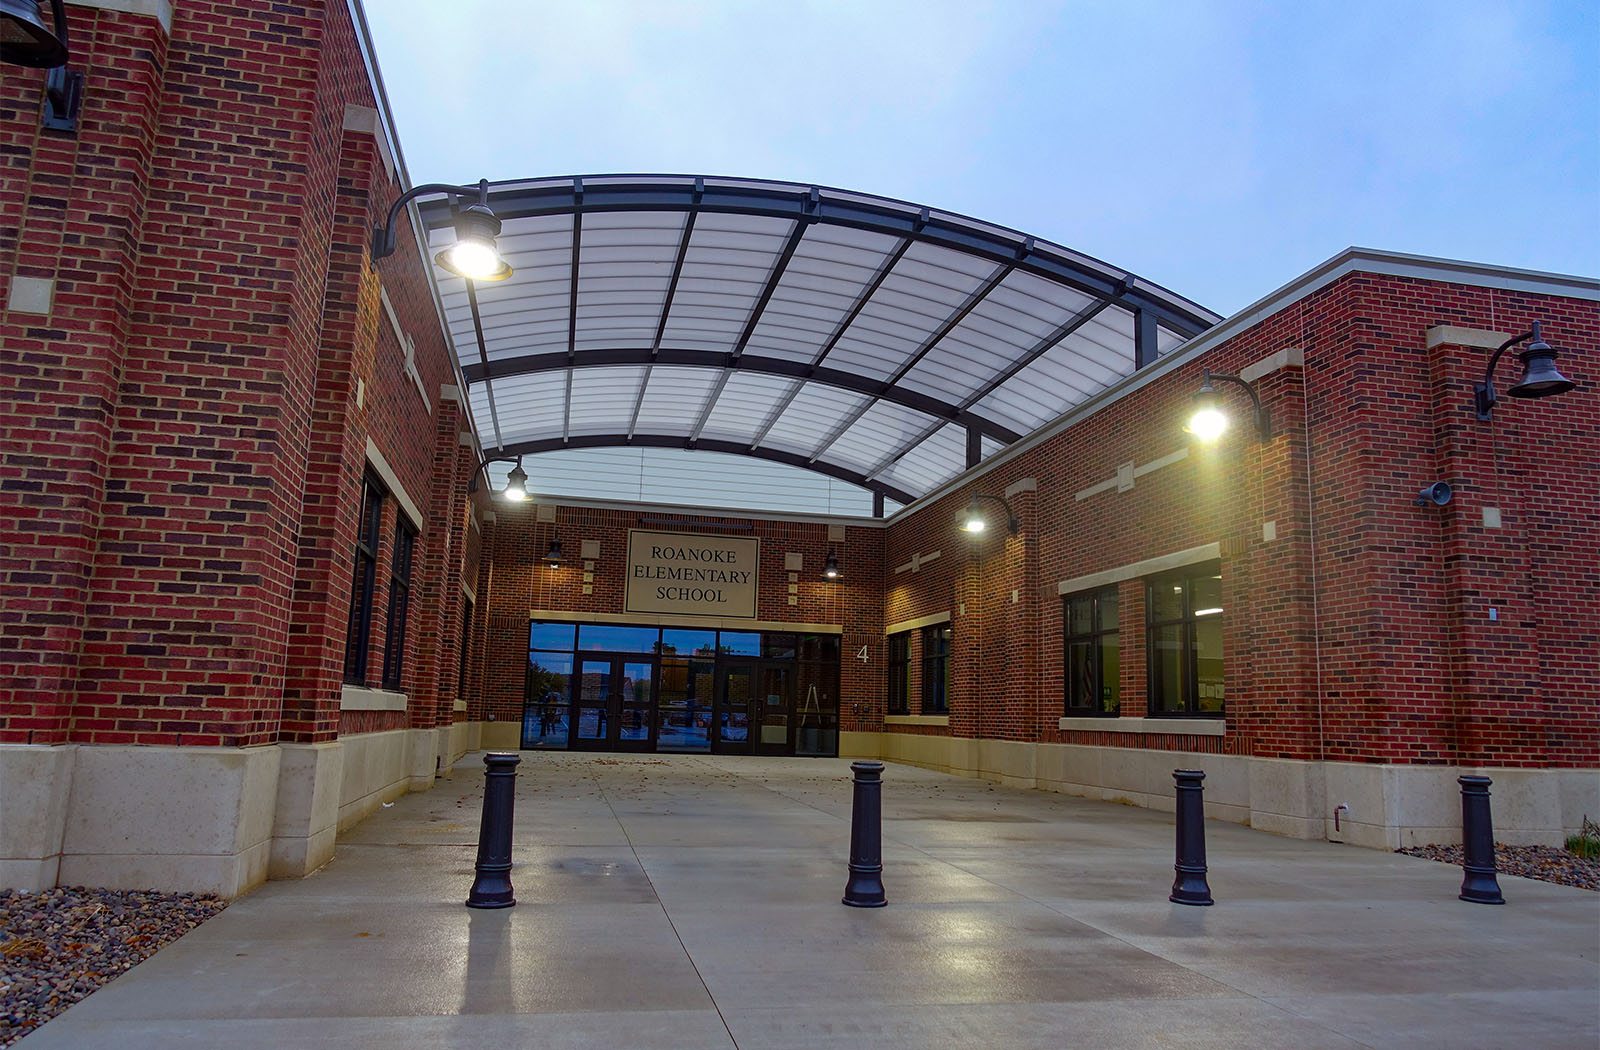 Roanoke School-62492a-40x46-Entrance Canopy-Education